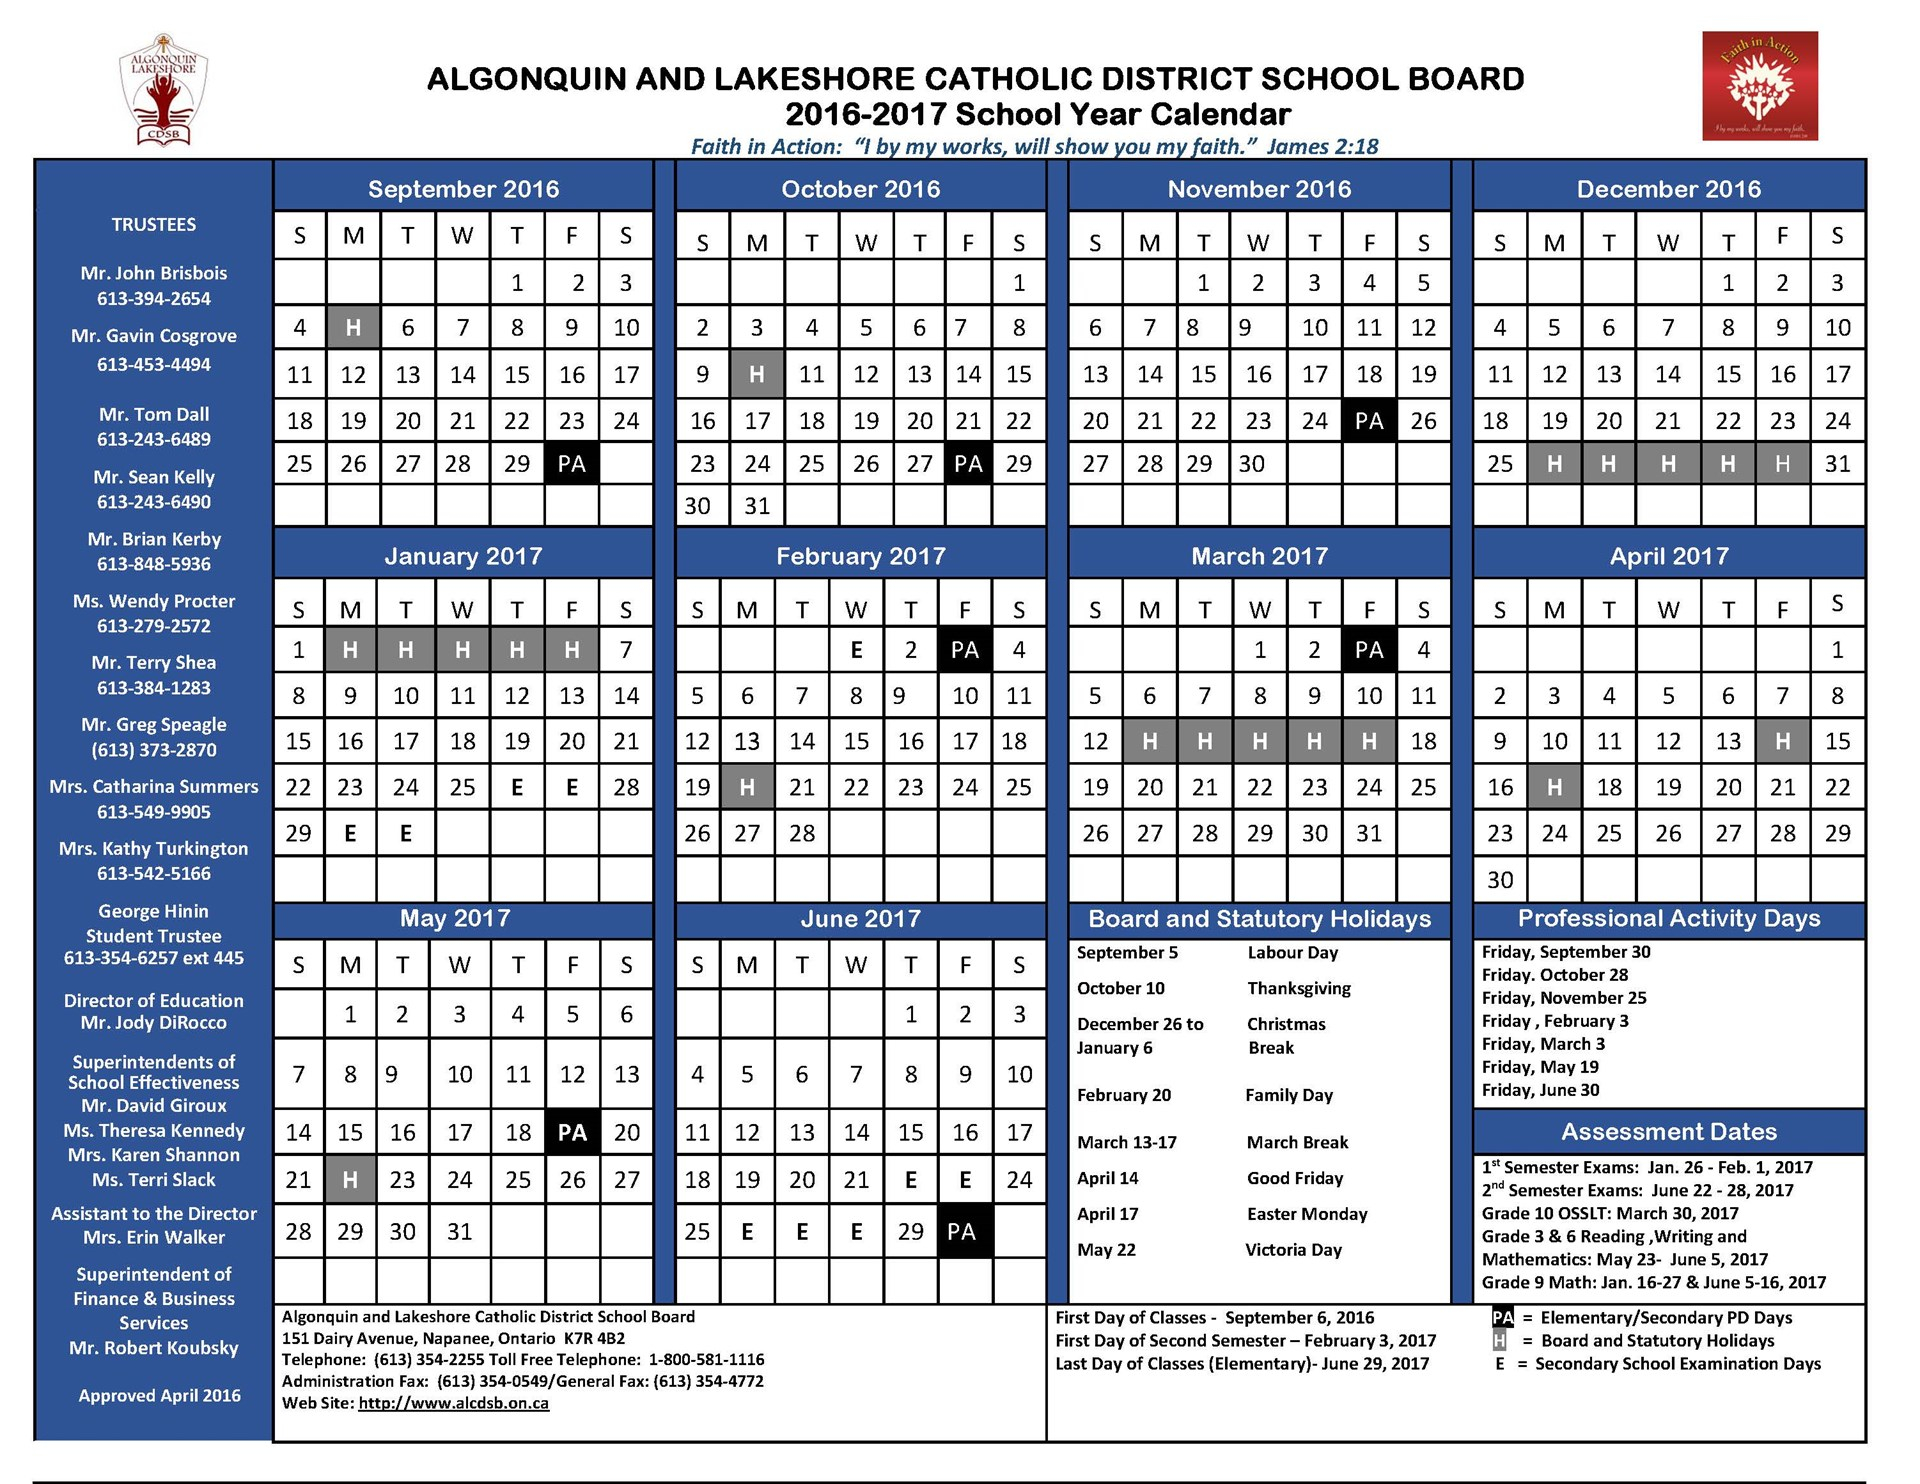 Catholic School Board Calendar 2025 2026